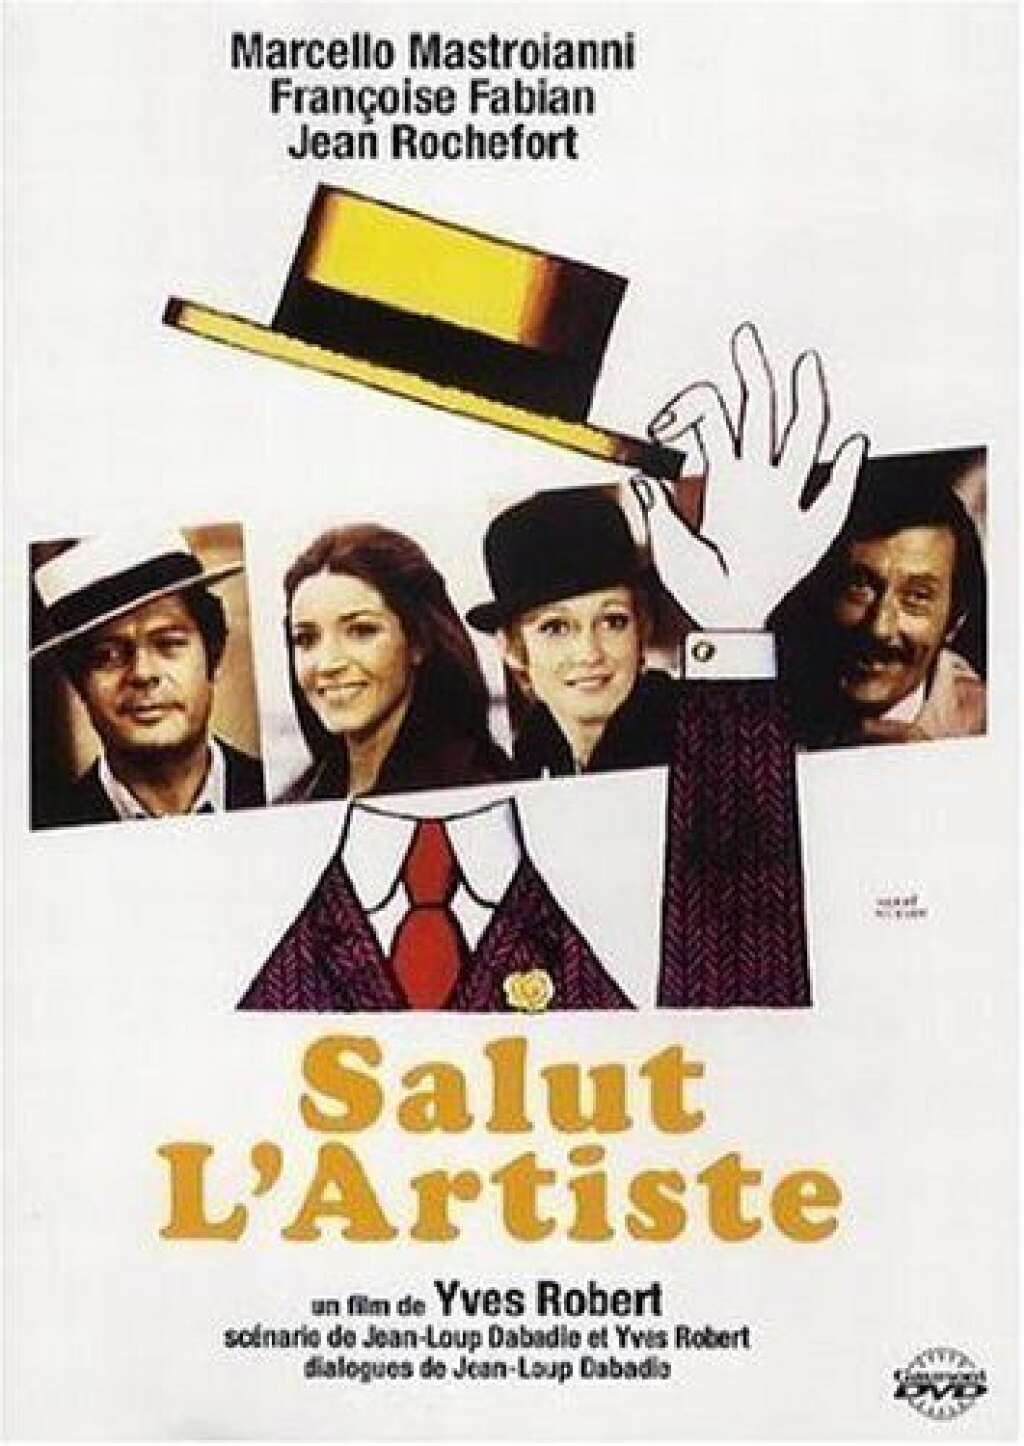 "Salut l'artiste" de Yves Robert (1973) - "Salut l'artiste" de Yves Robert (1973) a été scénarisé par Dabadie.